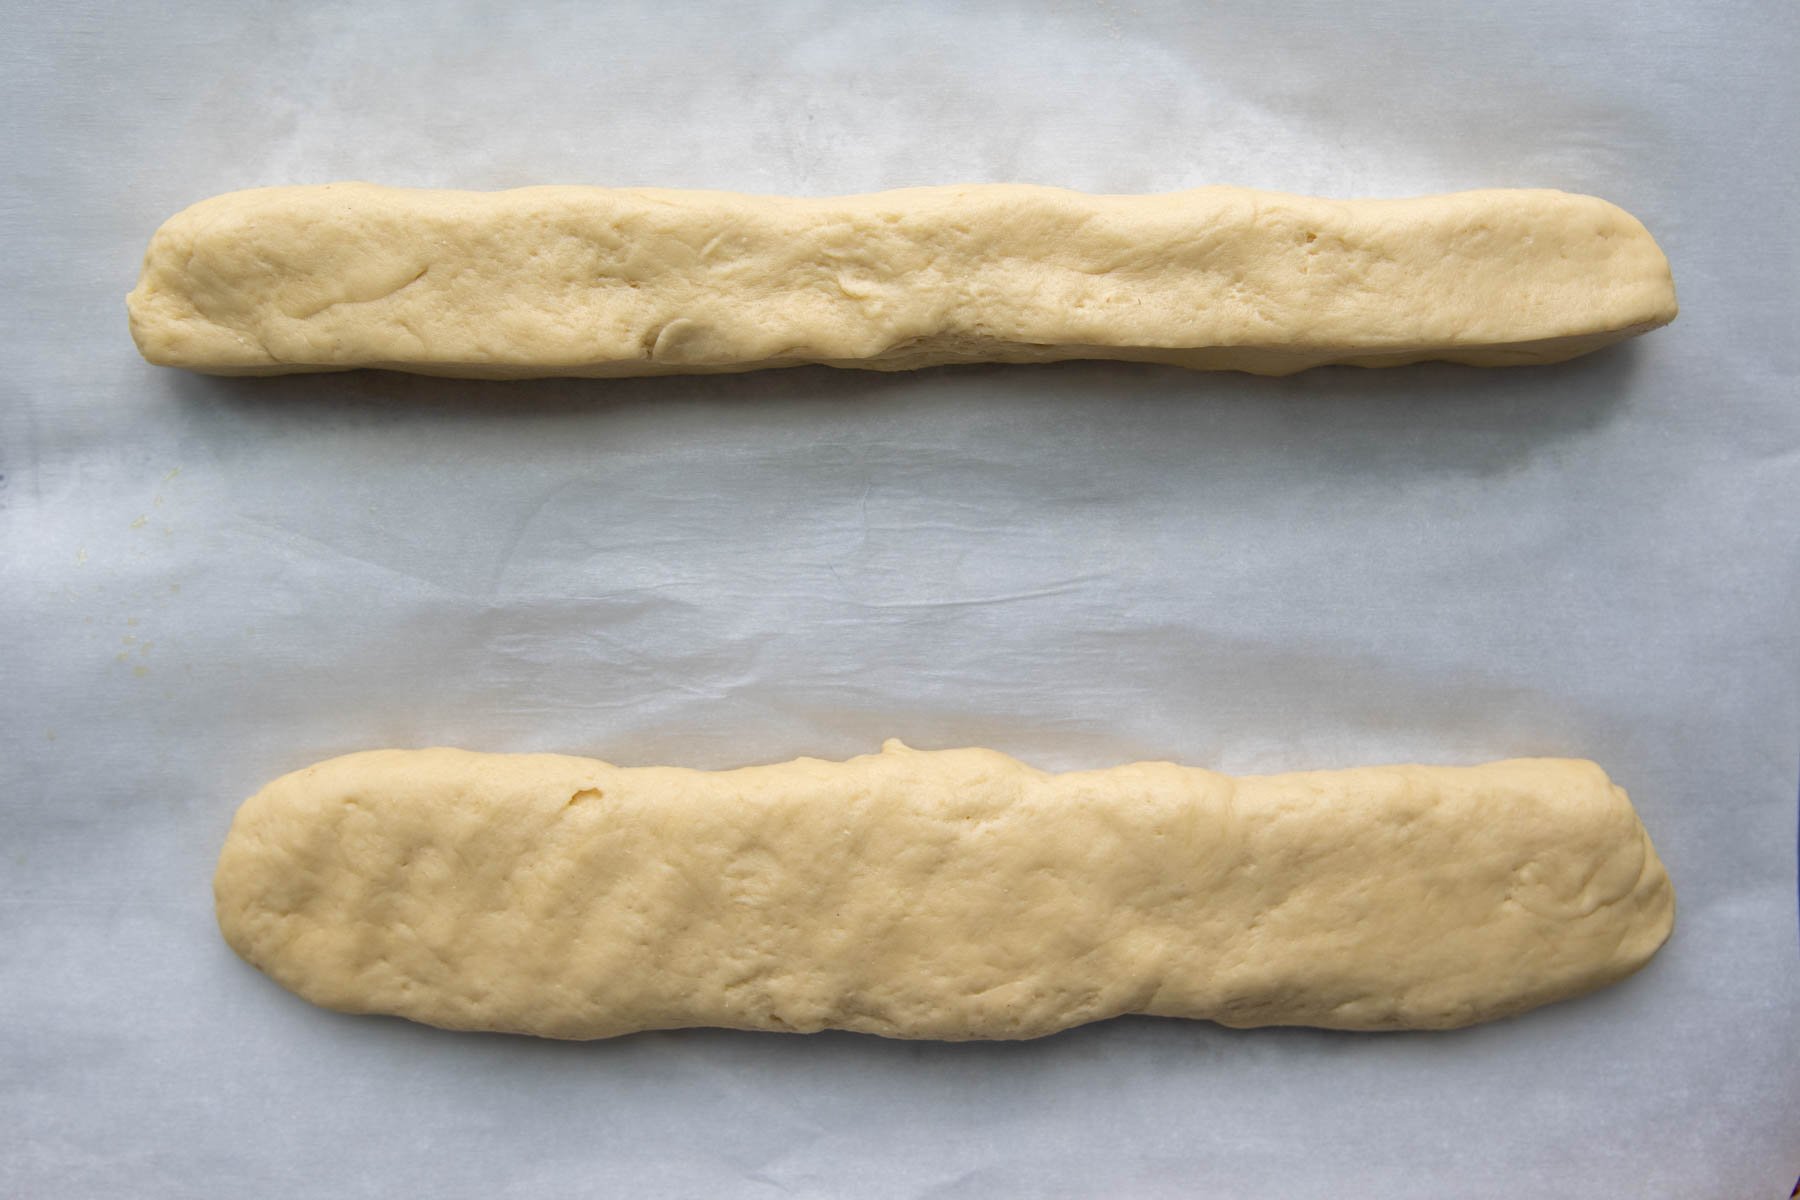 Pinch the dough into a 12-inch log then flatten.